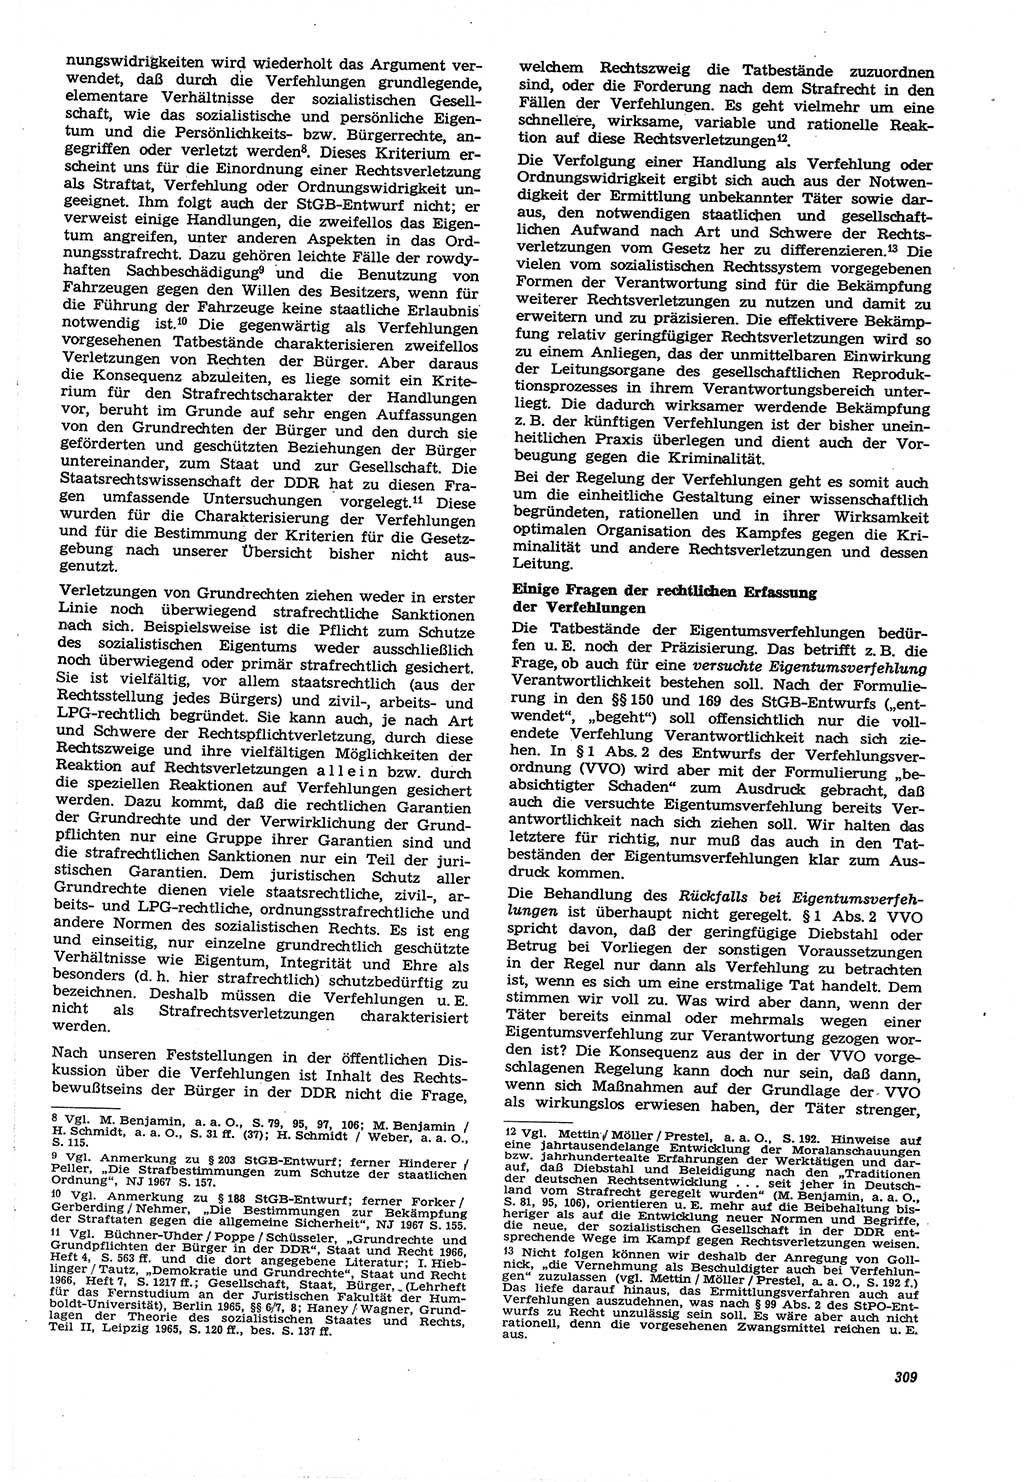 Neue Justiz (NJ), Zeitschrift für Recht und Rechtswissenschaft [Deutsche Demokratische Republik (DDR)], 21. Jahrgang 1967, Seite 309 (NJ DDR 1967, S. 309)